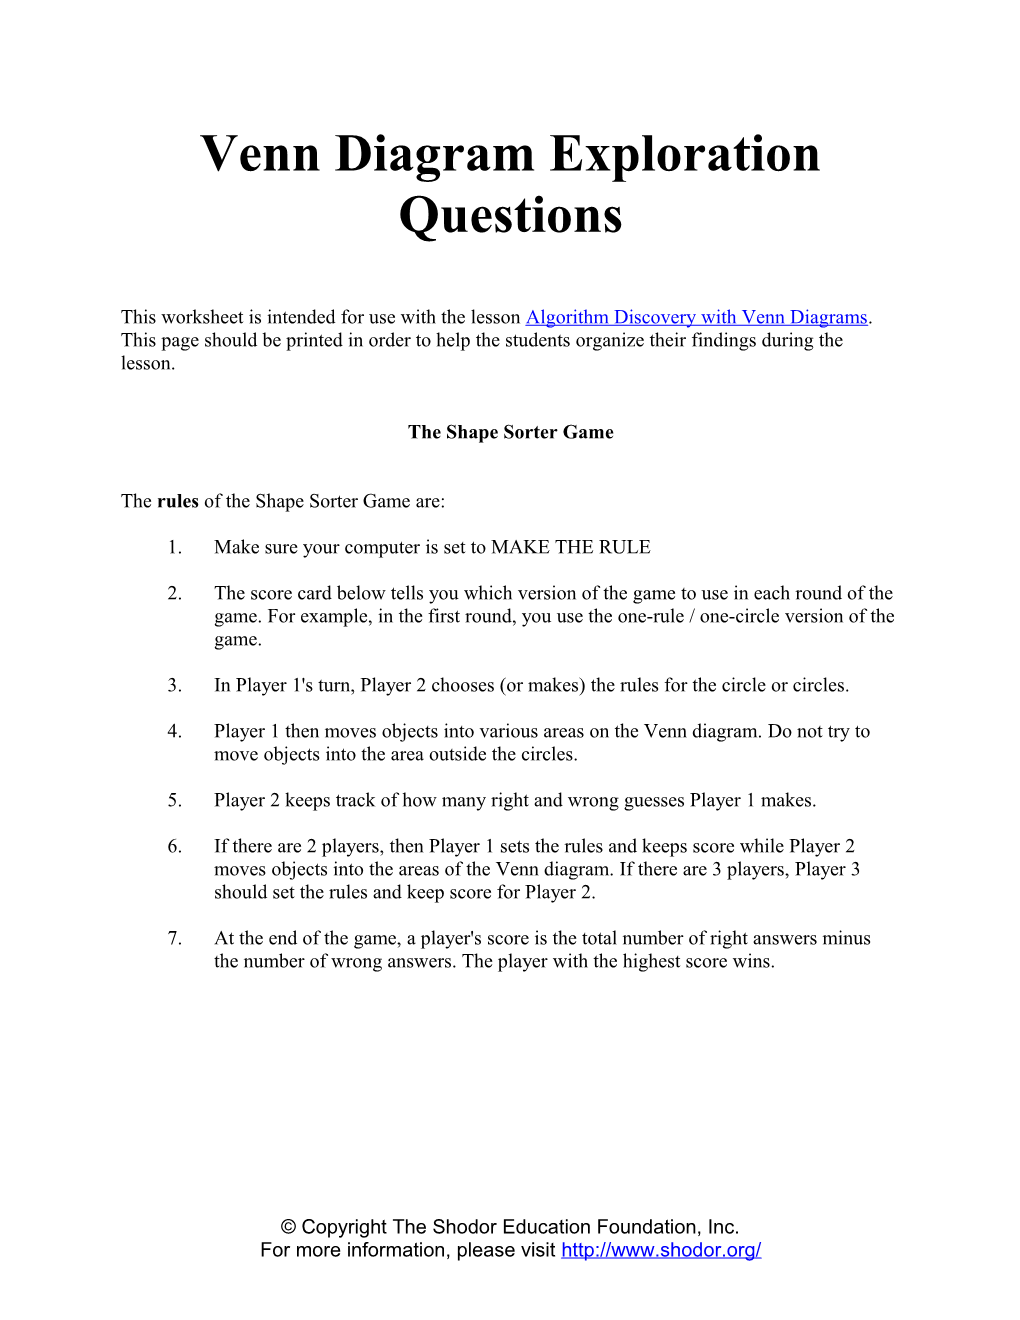 Venn Diagram Exploration Questions